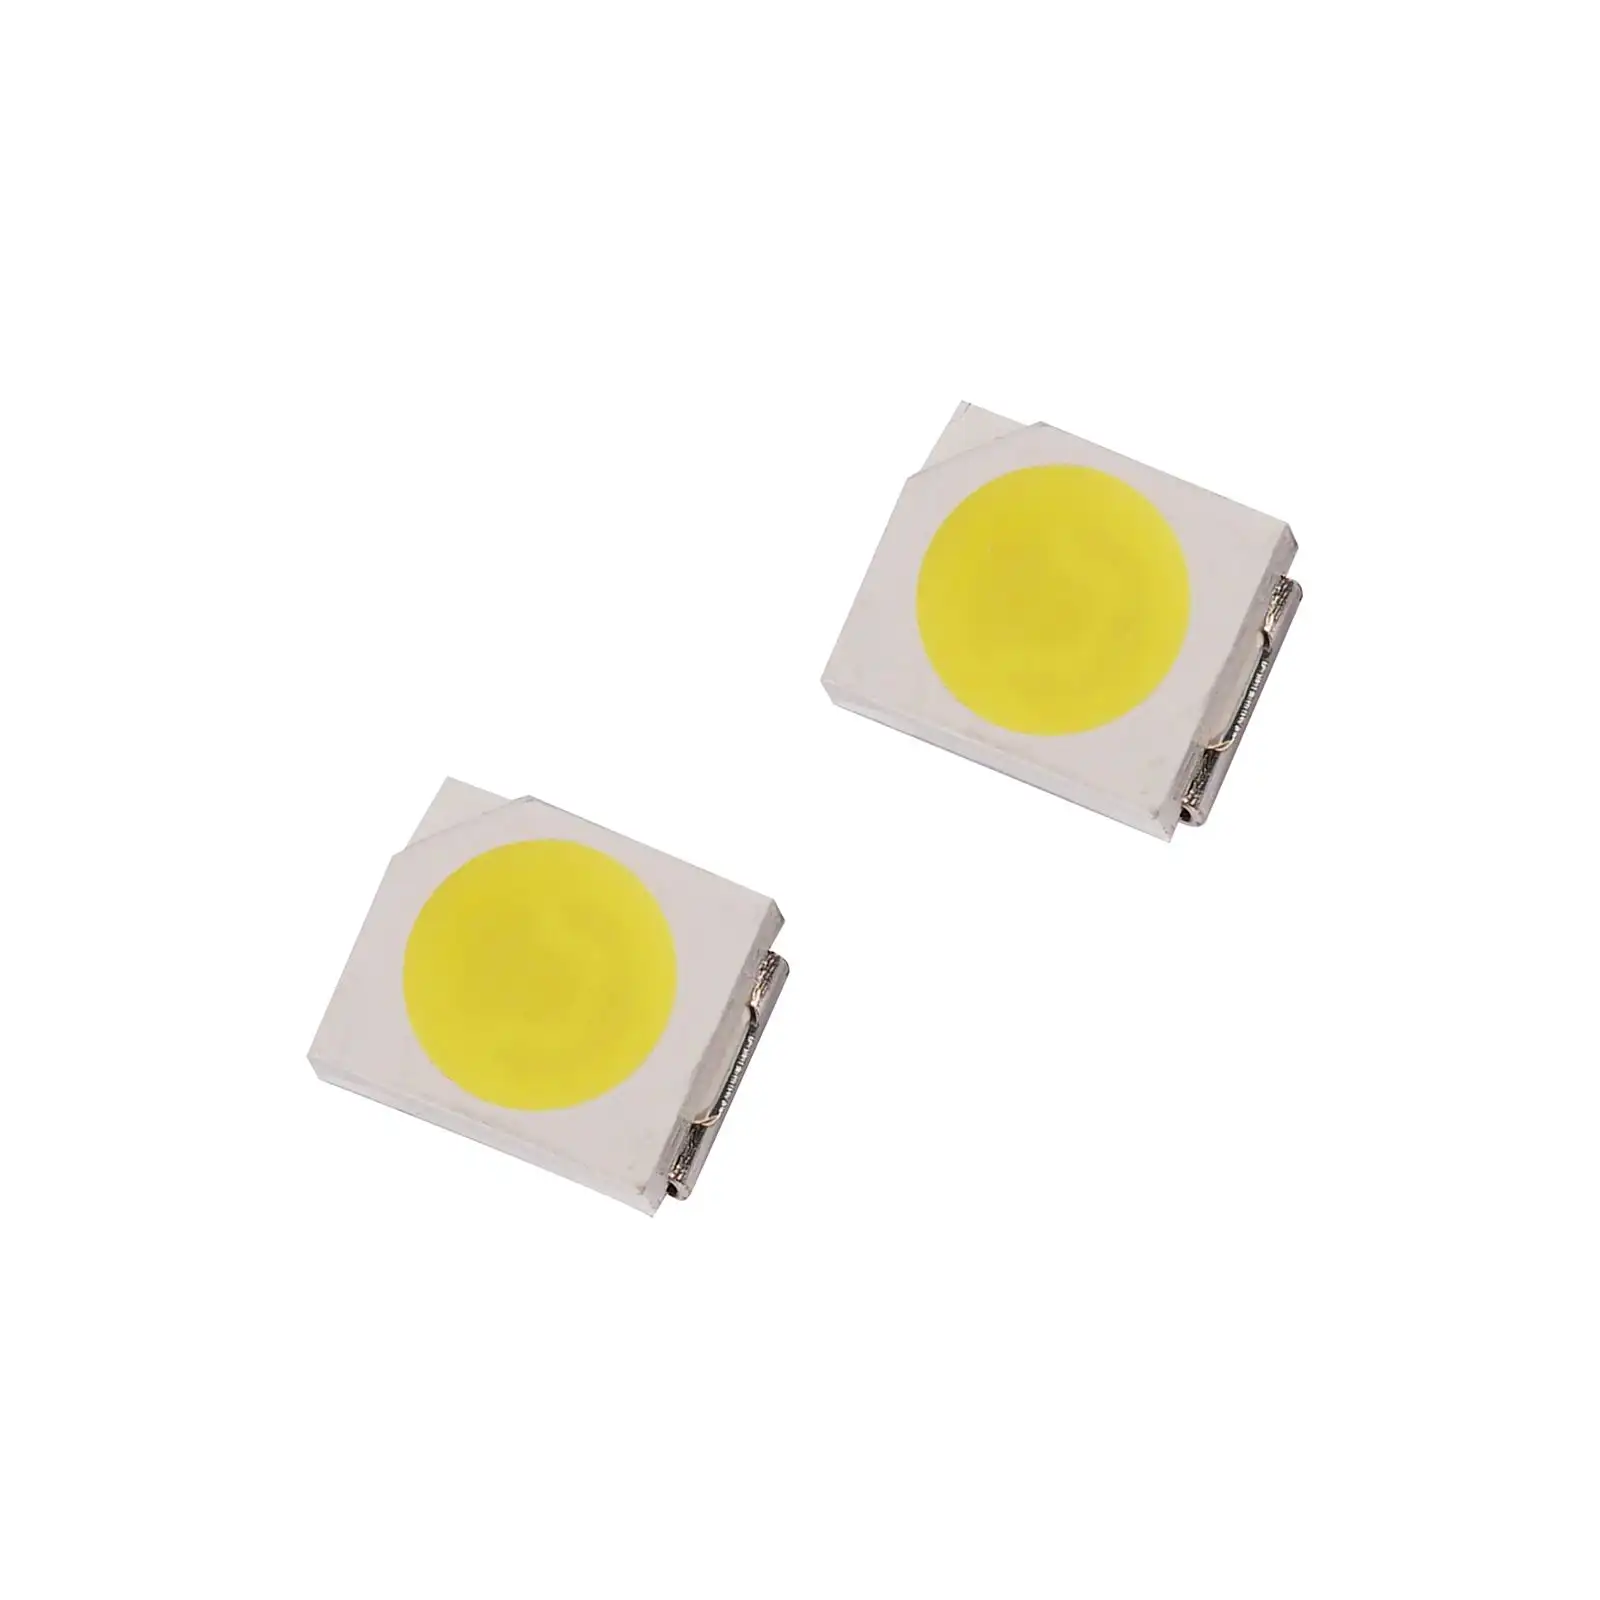 Nhà Máy bán hàng trực tiếp SMD 3528 LED được sử dụng trong các sản phẩm điện tử 3528 LED Diode thâm quyến tại chỗ Nhà cung cấp